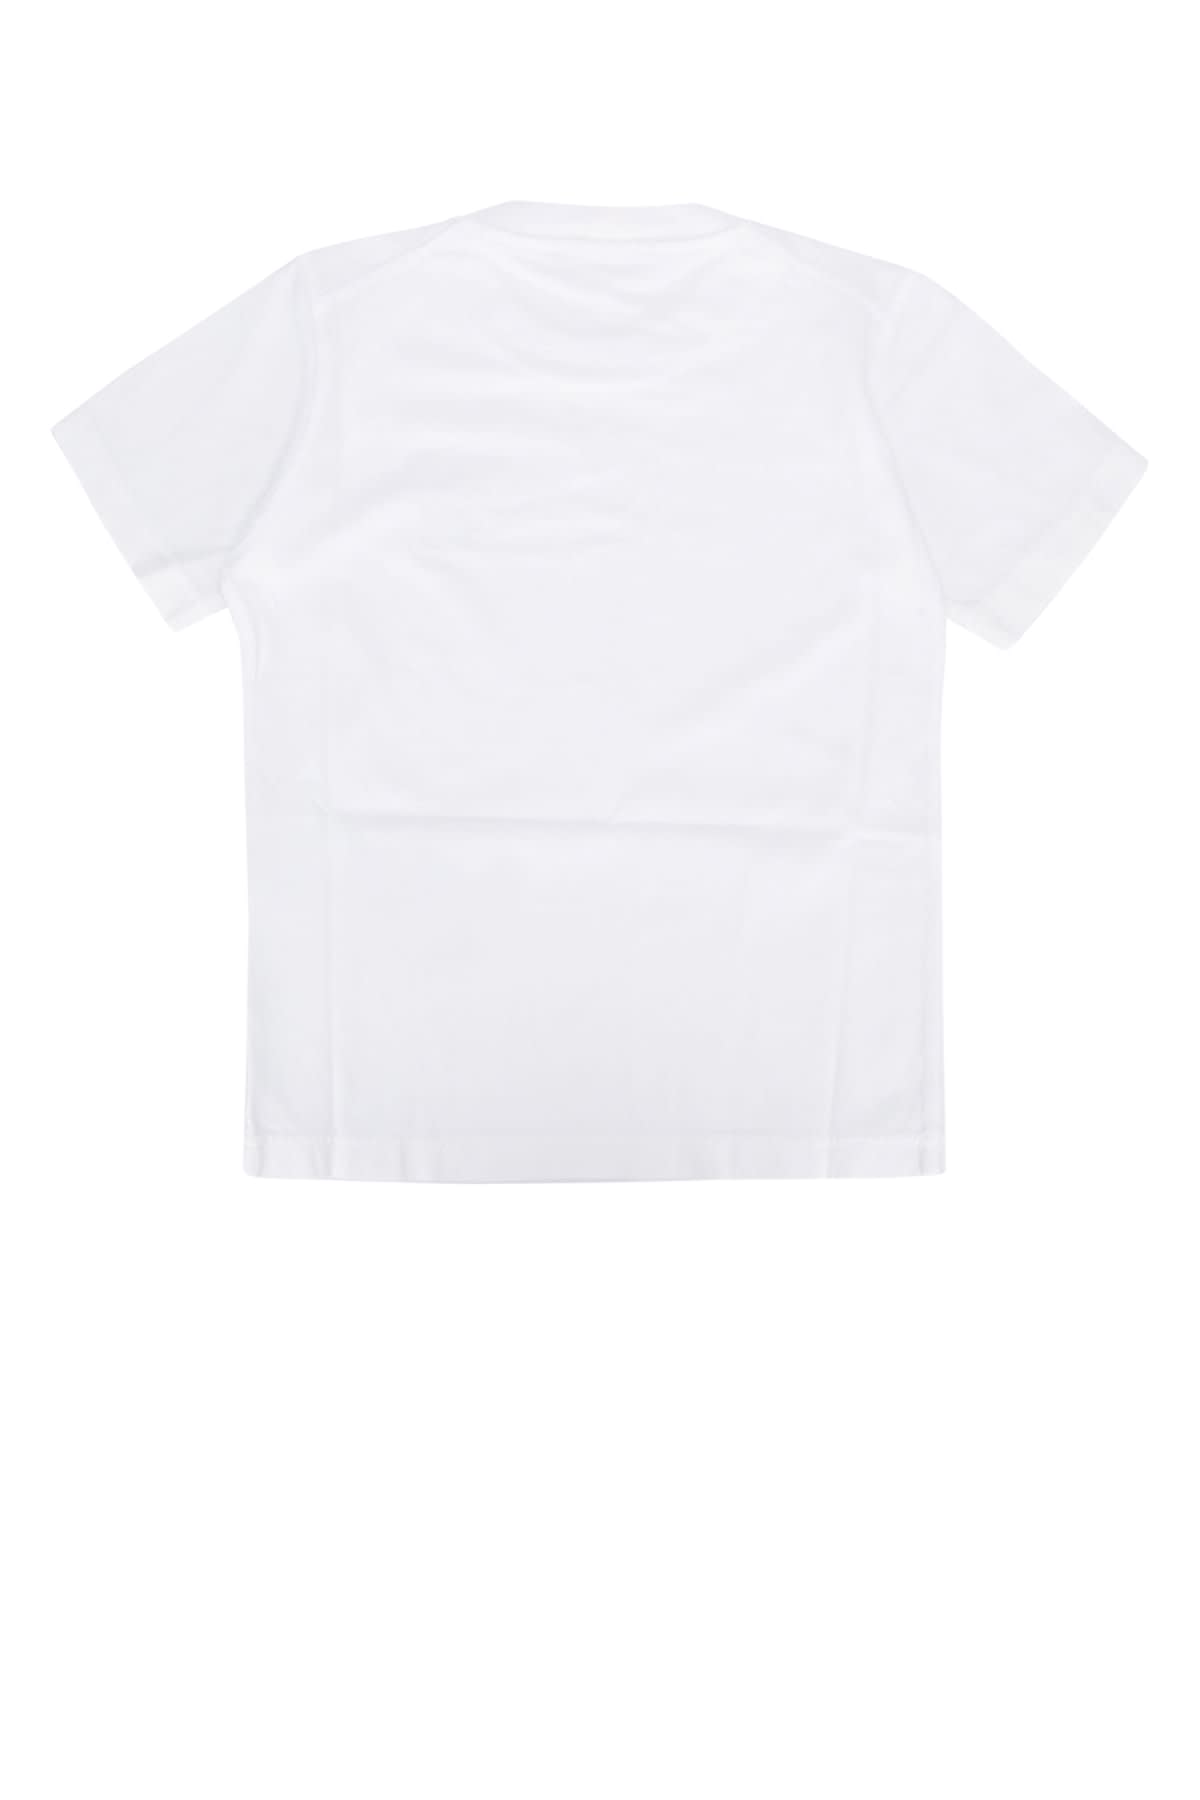 Stone Island Junior Kids' T-shirt In White